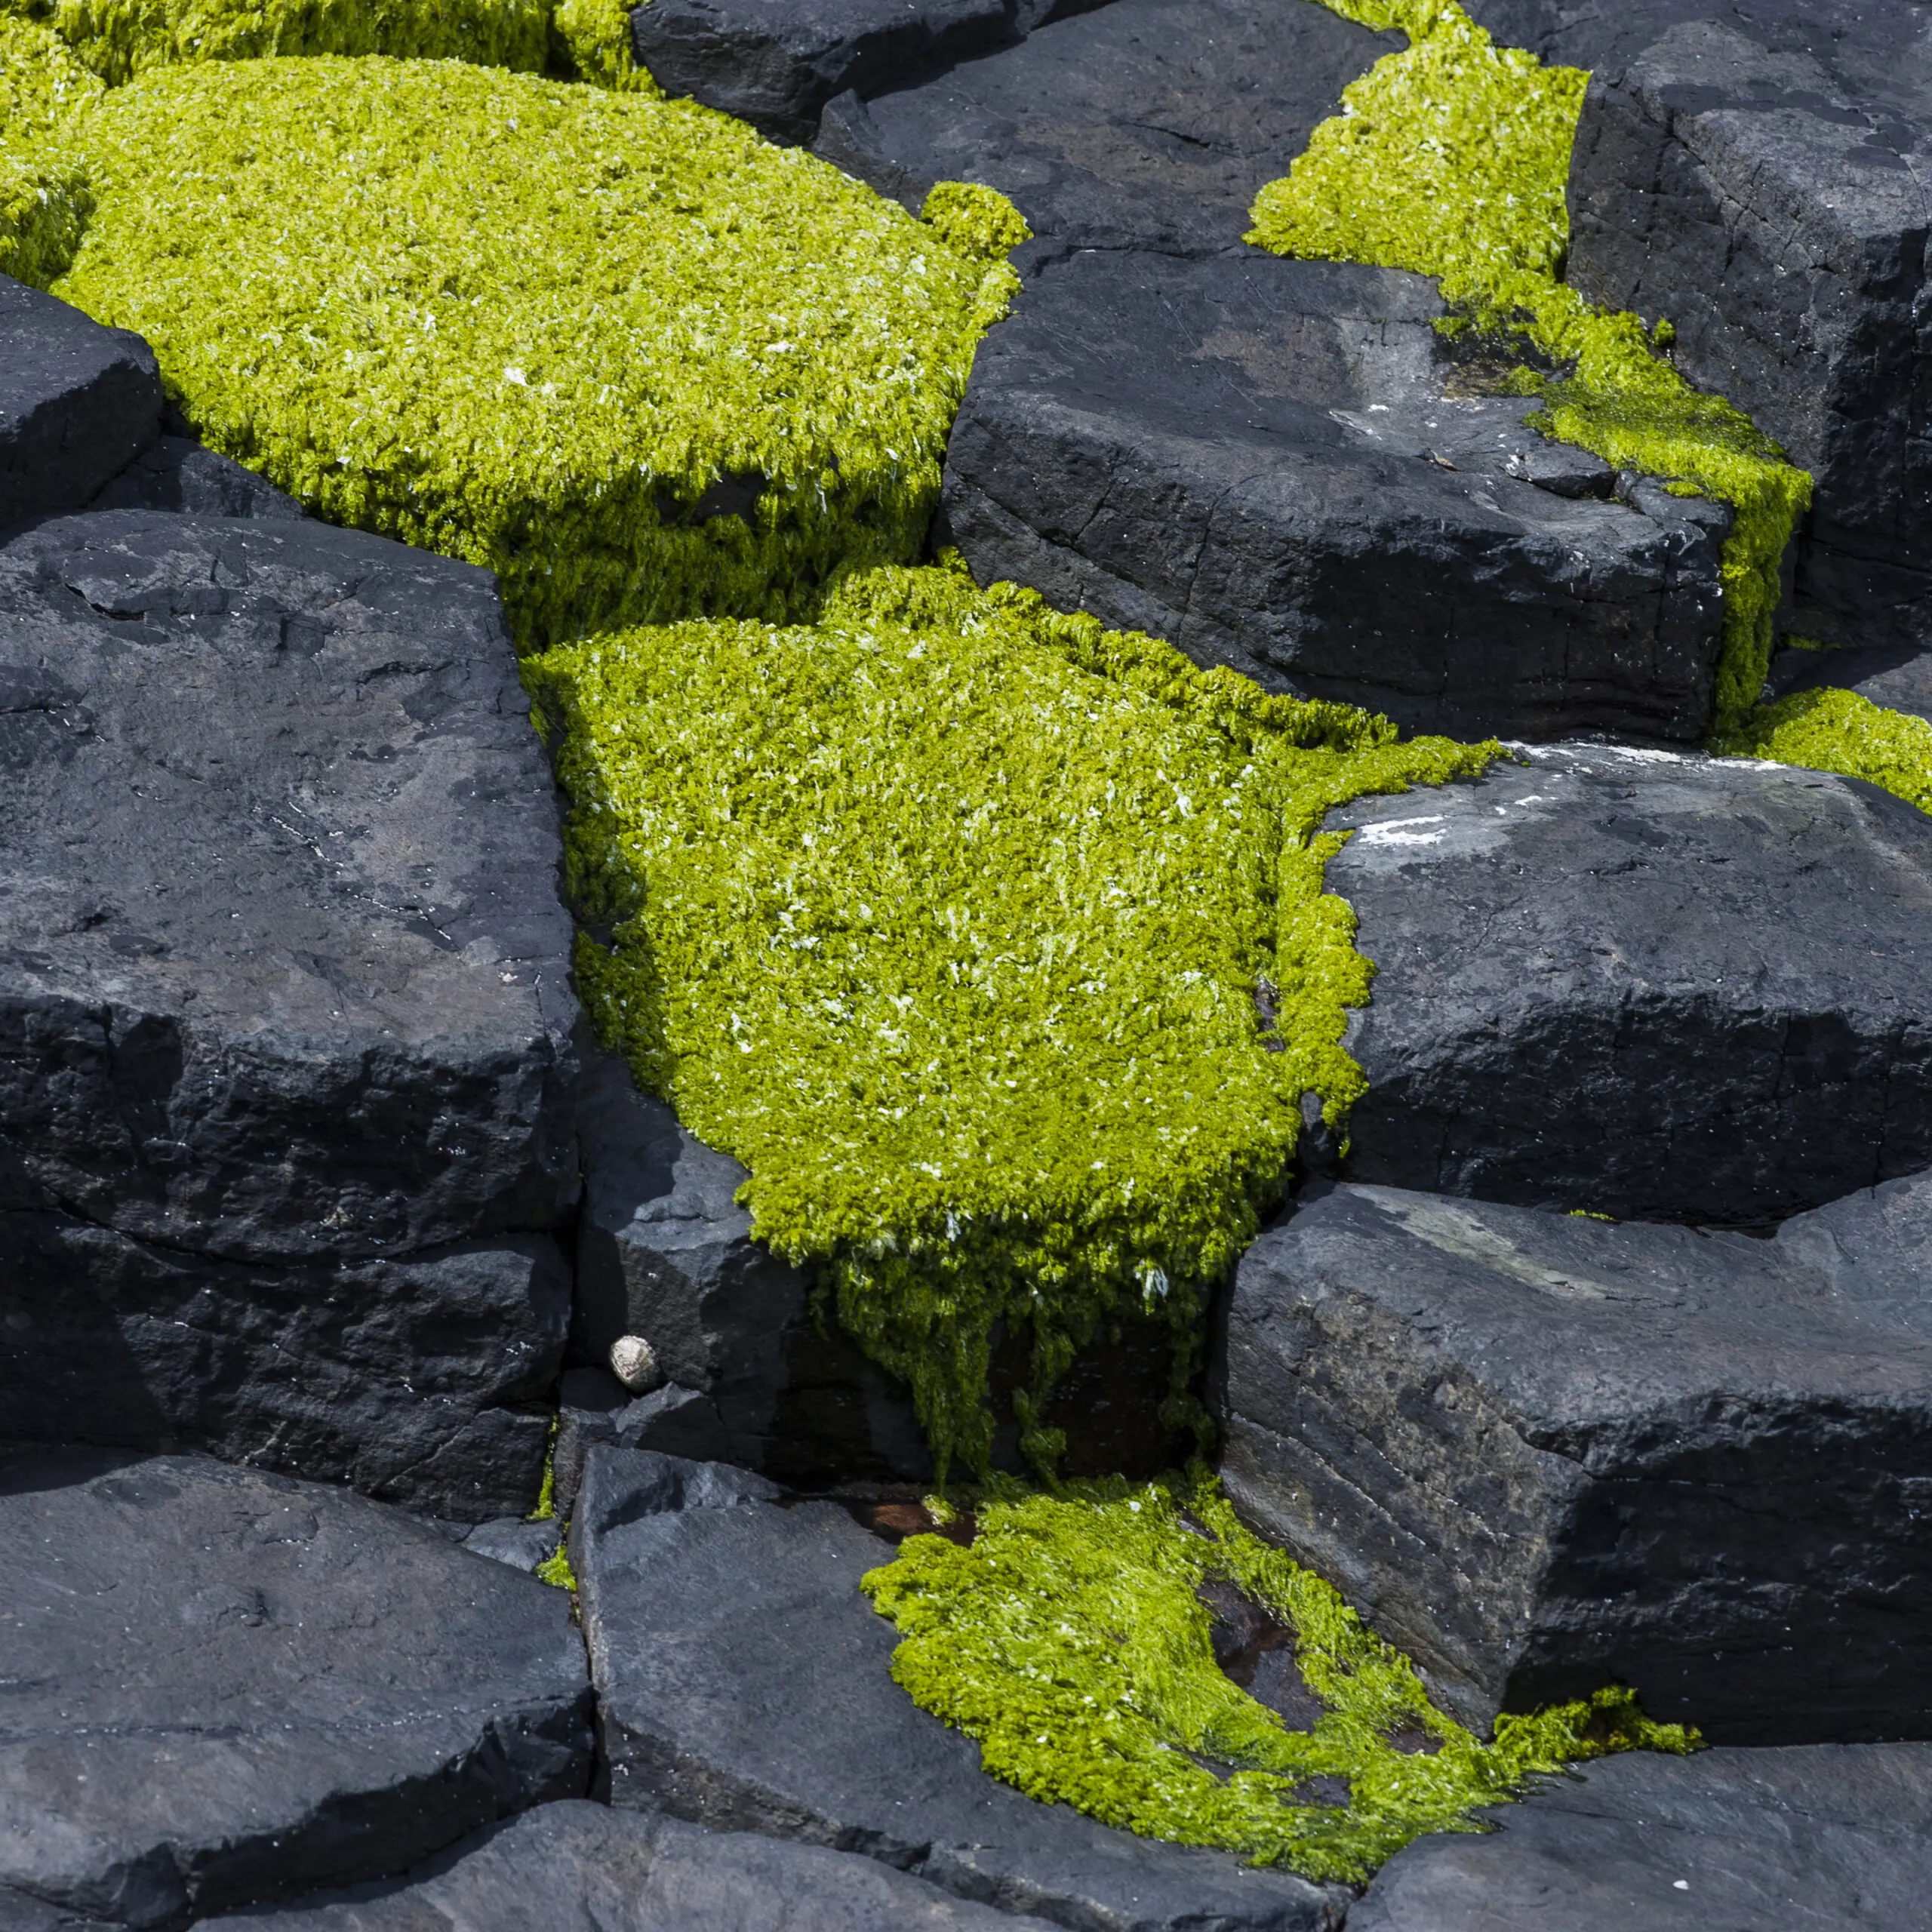 Wandbild (294) Green Basalt präsentiert: Details und Strukturen,Natur,Steine